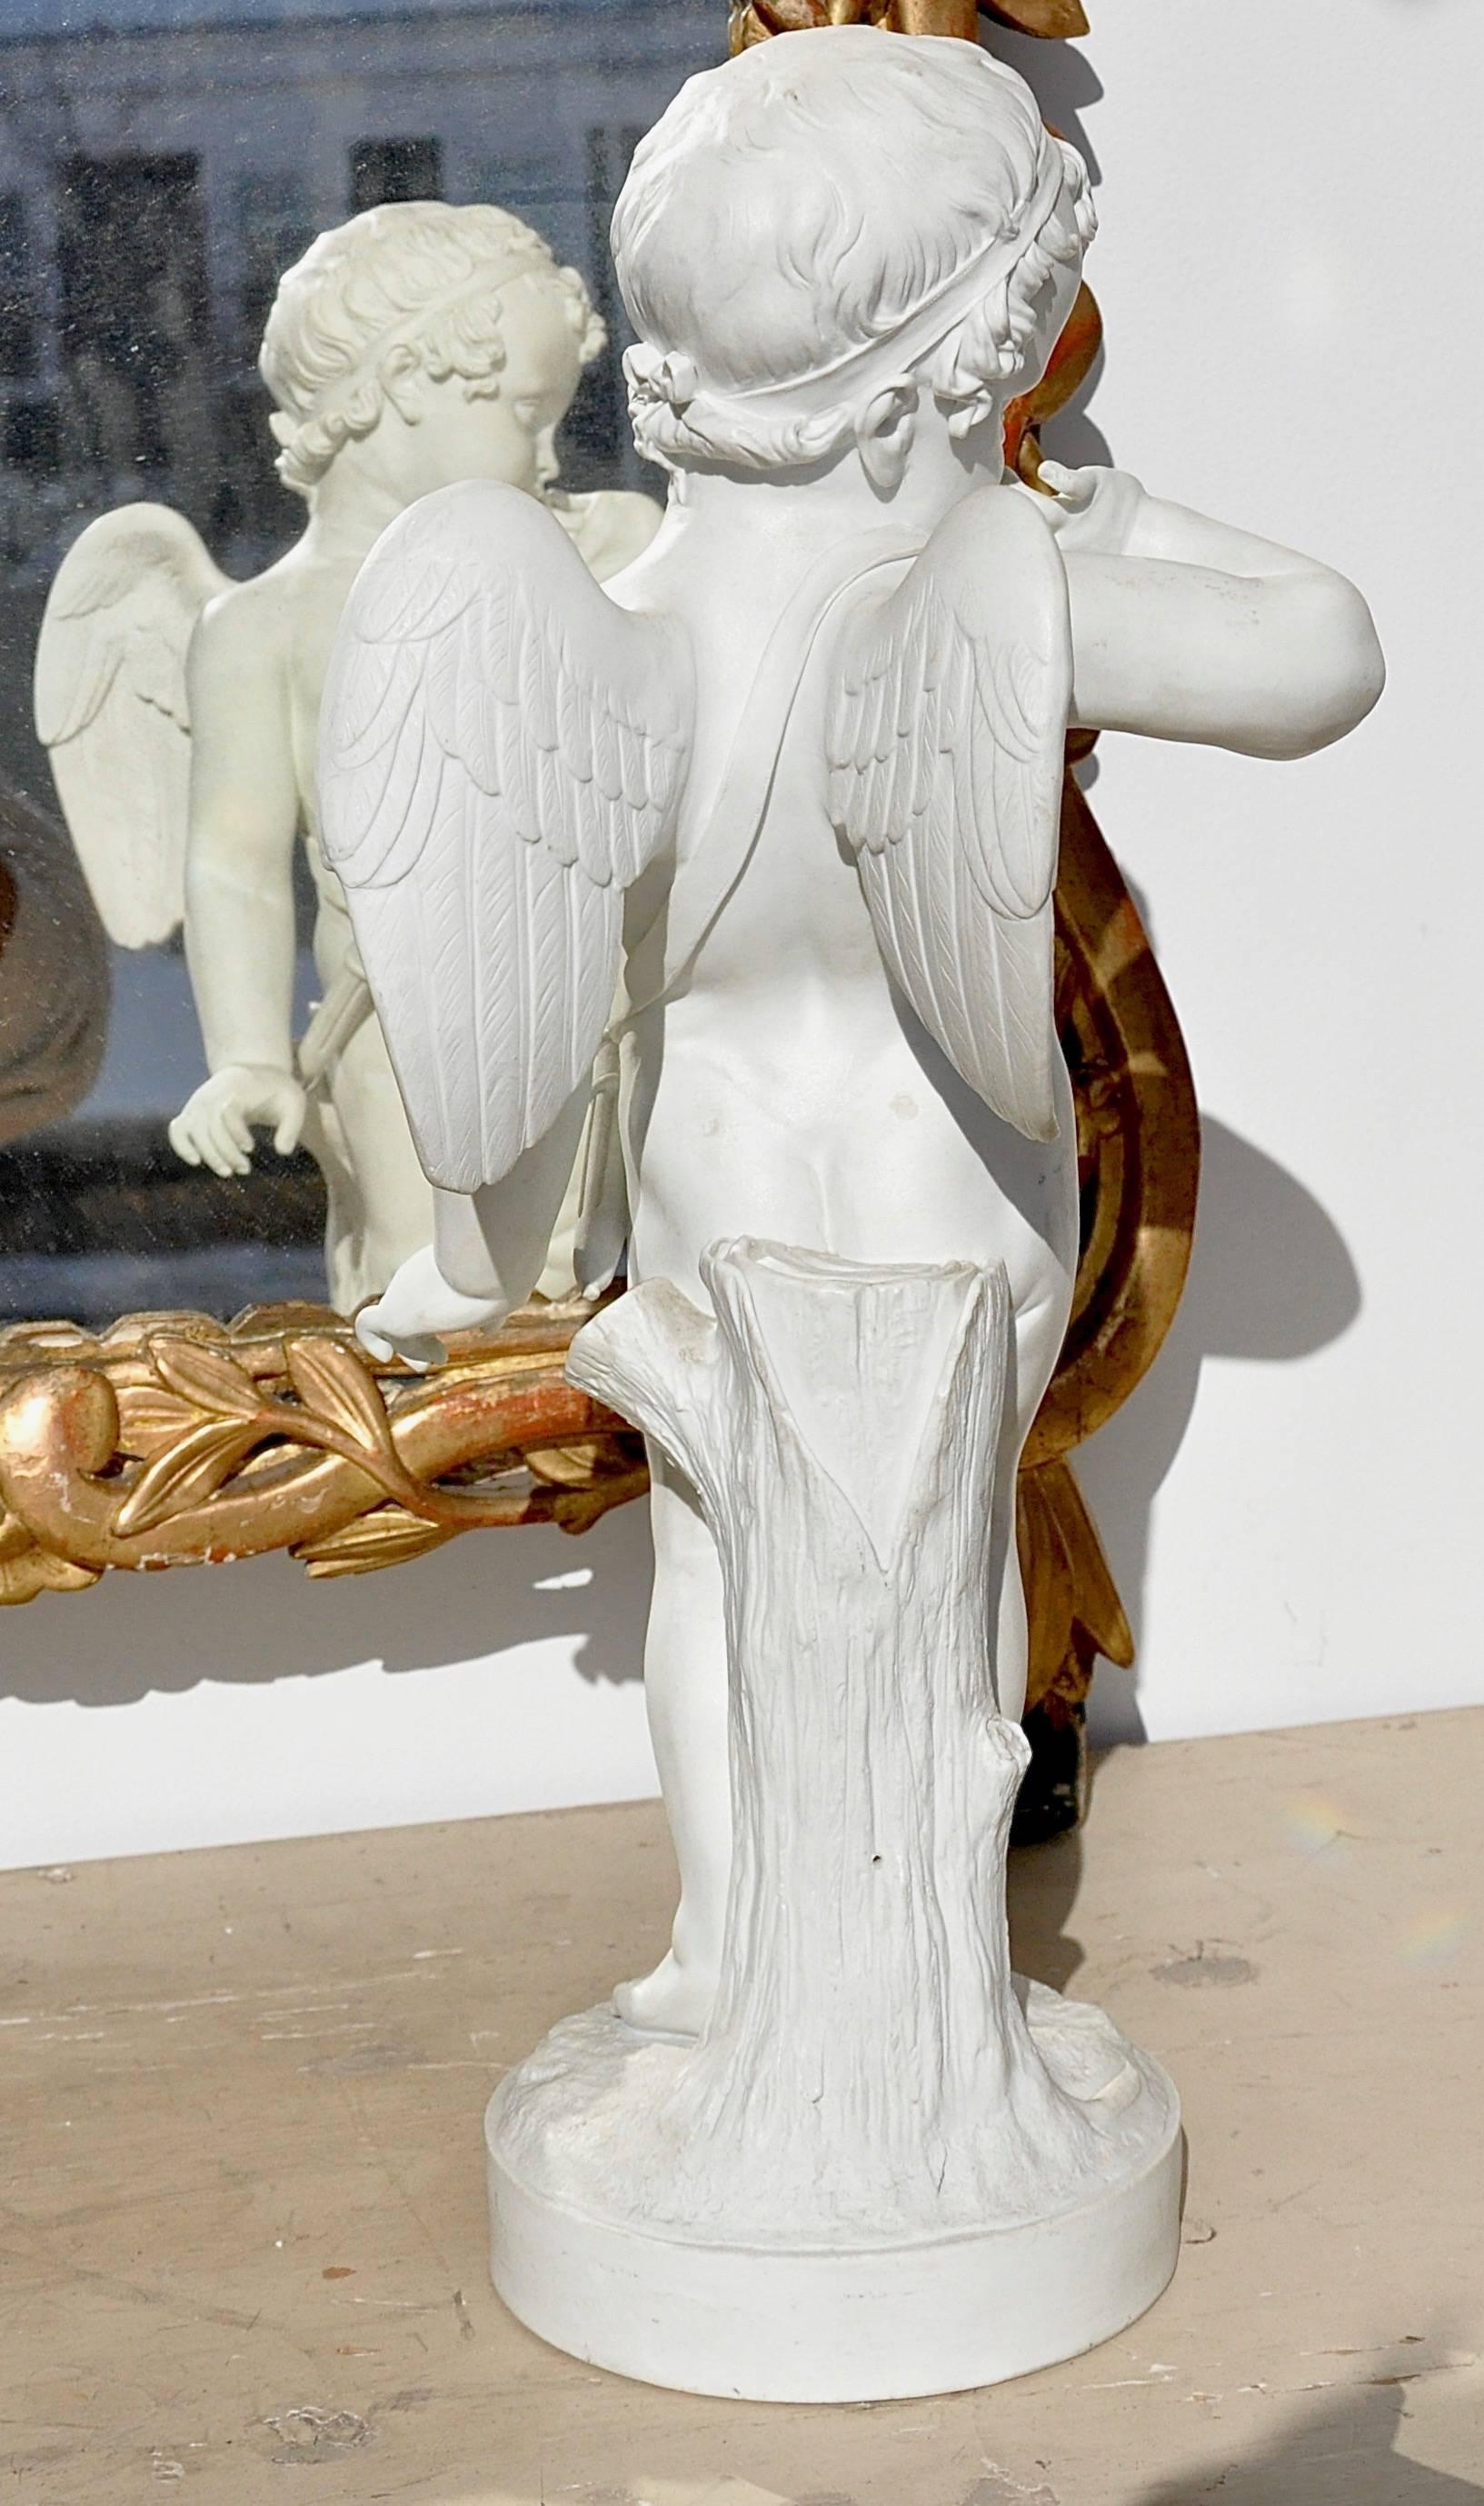 Große, realistisch geformte Biskuit-Porzellanfigur von Amor mit Pfeilen.

Wird der Pariser Manufaktur Dihl und Guerhard zugeschrieben, die unter der Schirmherrschaft von Josephine Bonaparte stand.
unter anderem im späten 18. und im frühen 19.